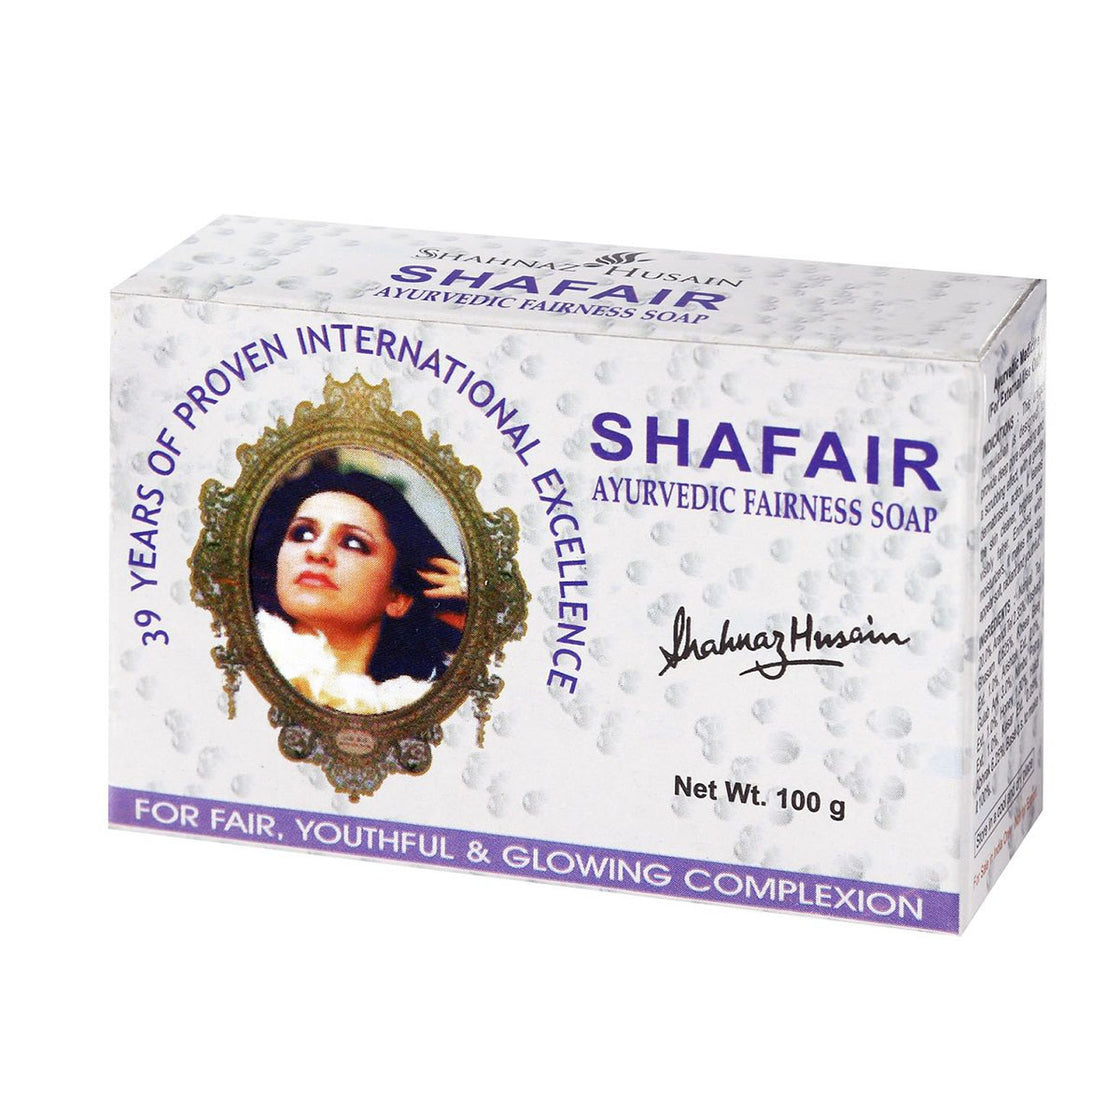 Shahnaz Husain Shafair Ayurvedic Fairness Soap (100G)